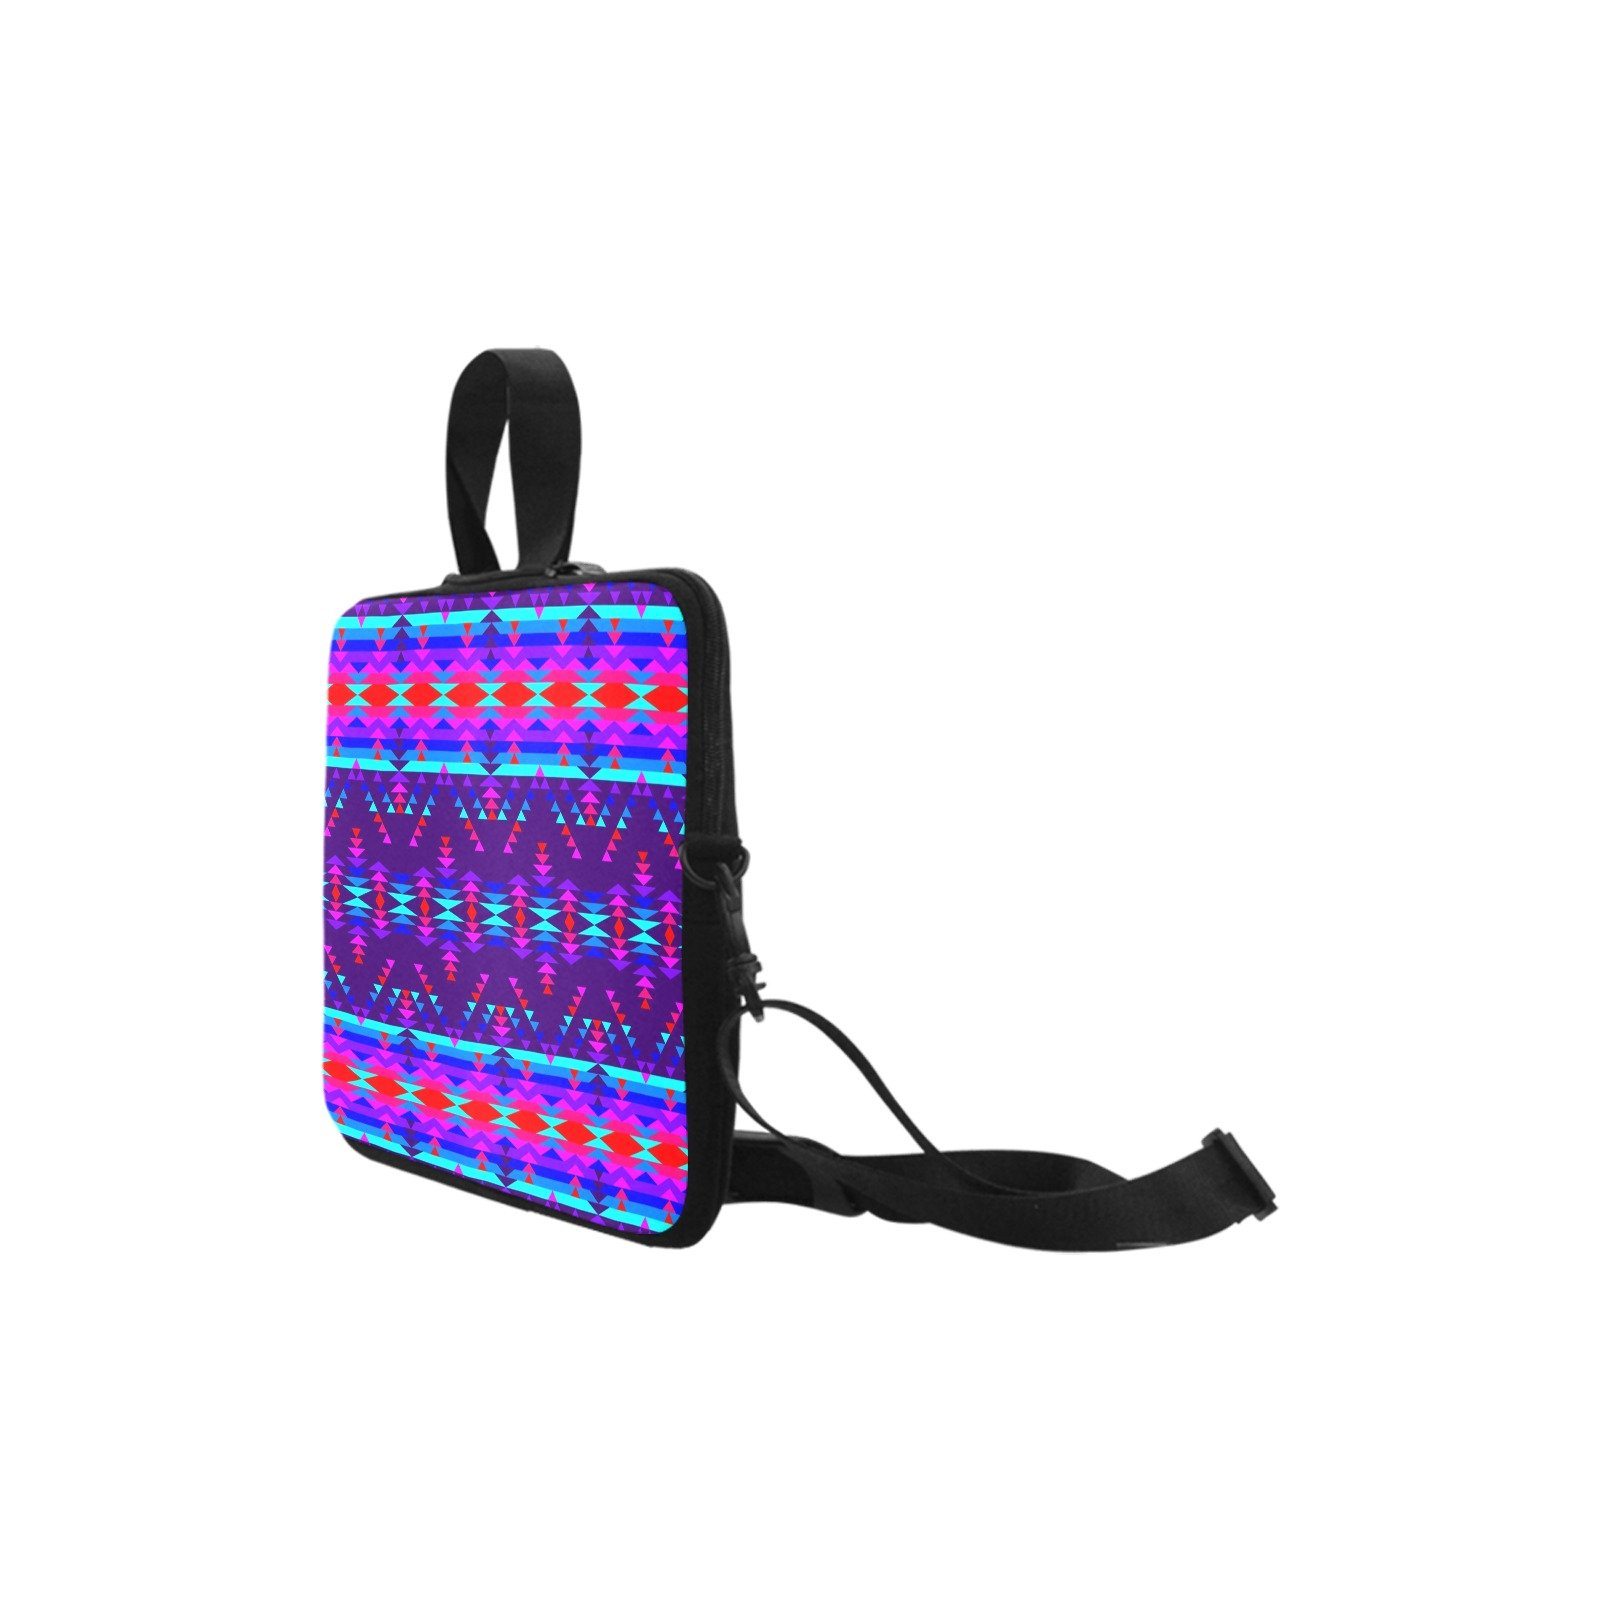 Vision of Peace Laptop Handbags 17" bag e-joyer 